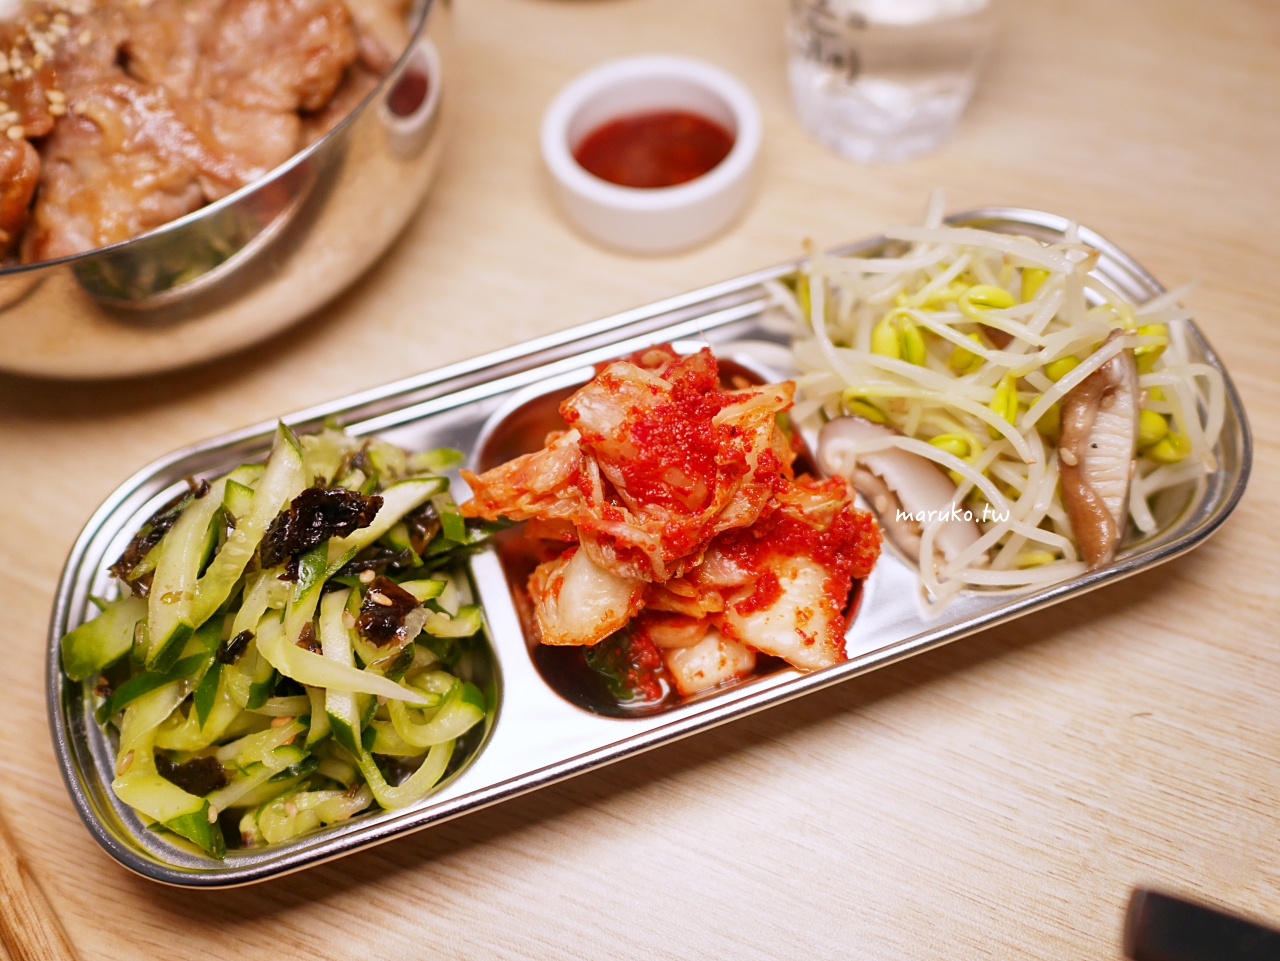 【食譜】韓式涼拌豆芽 夏天的清爽涼拌菜 只要二種調味料就搞定